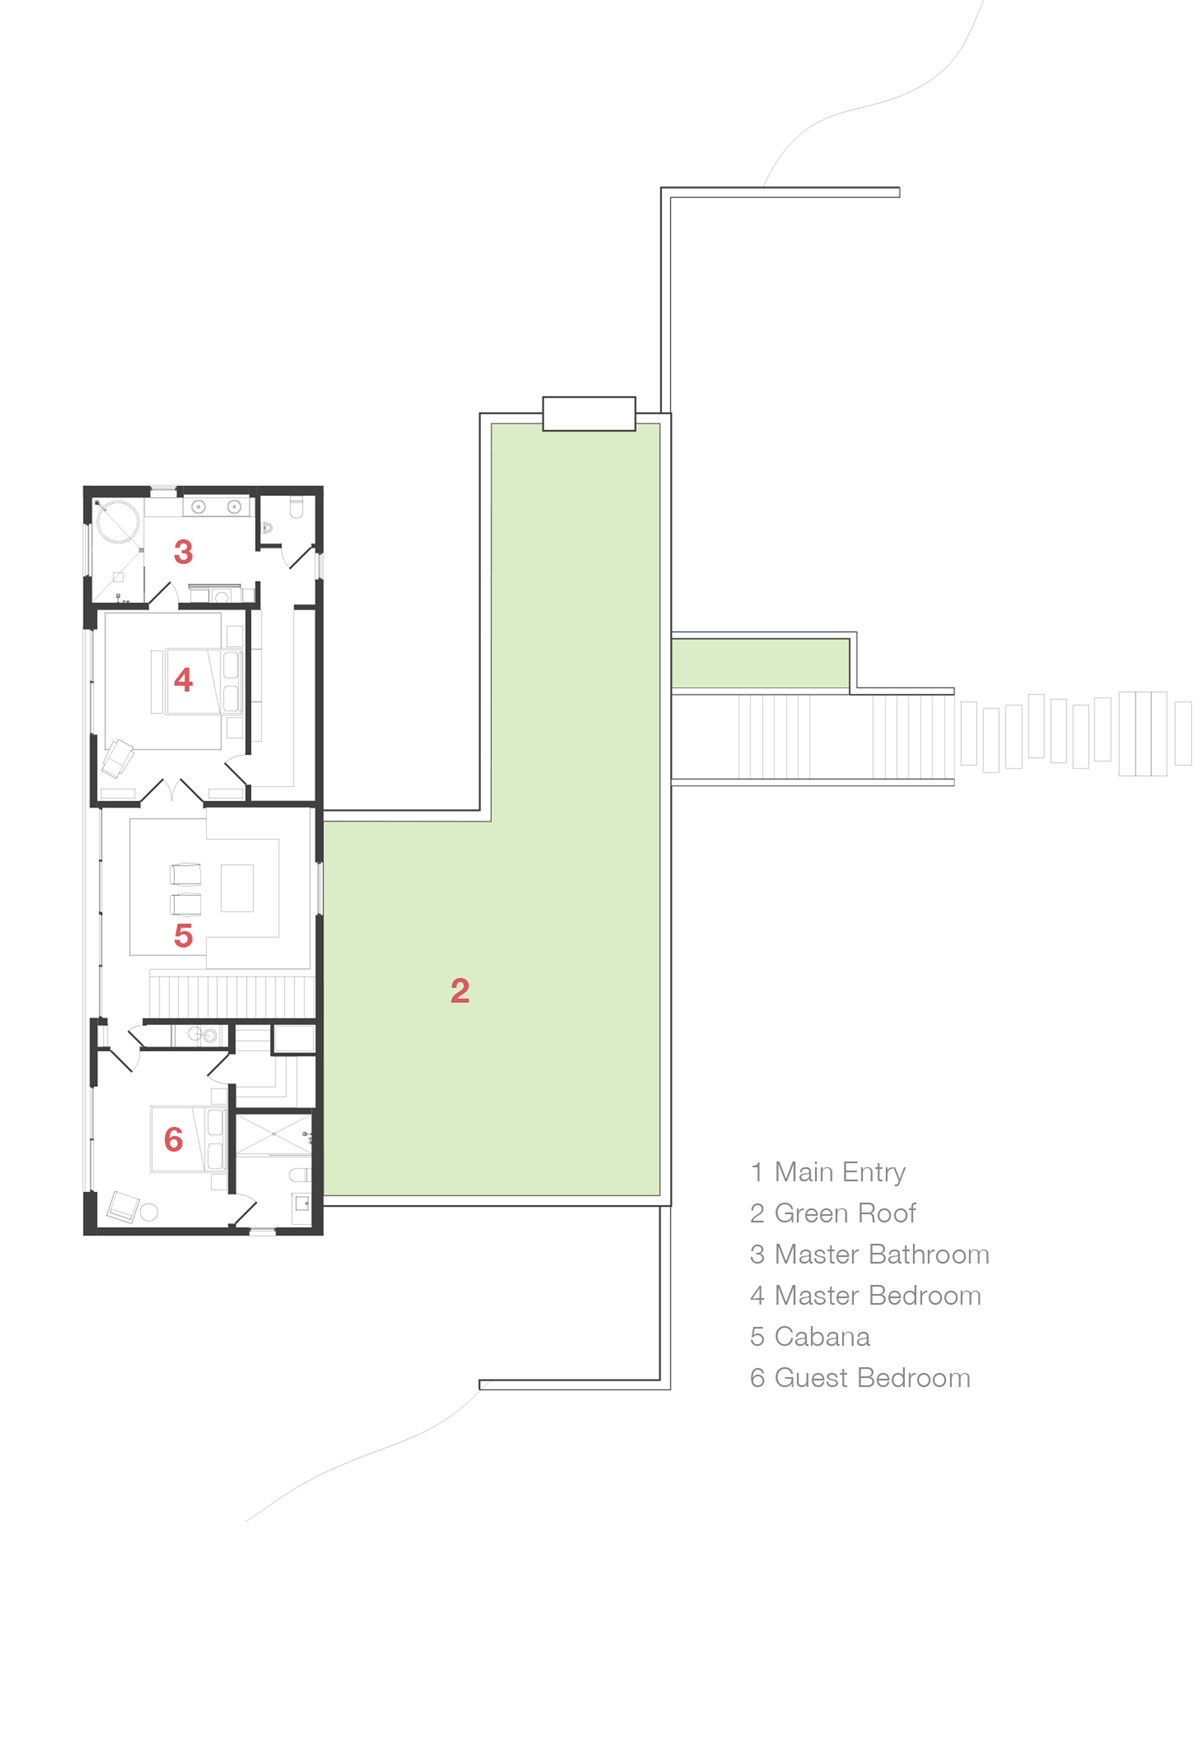 shore-house-leeroy-street-studio-north-haven-new-york-scott-frances_dezeen_first-floor-plan.jpg